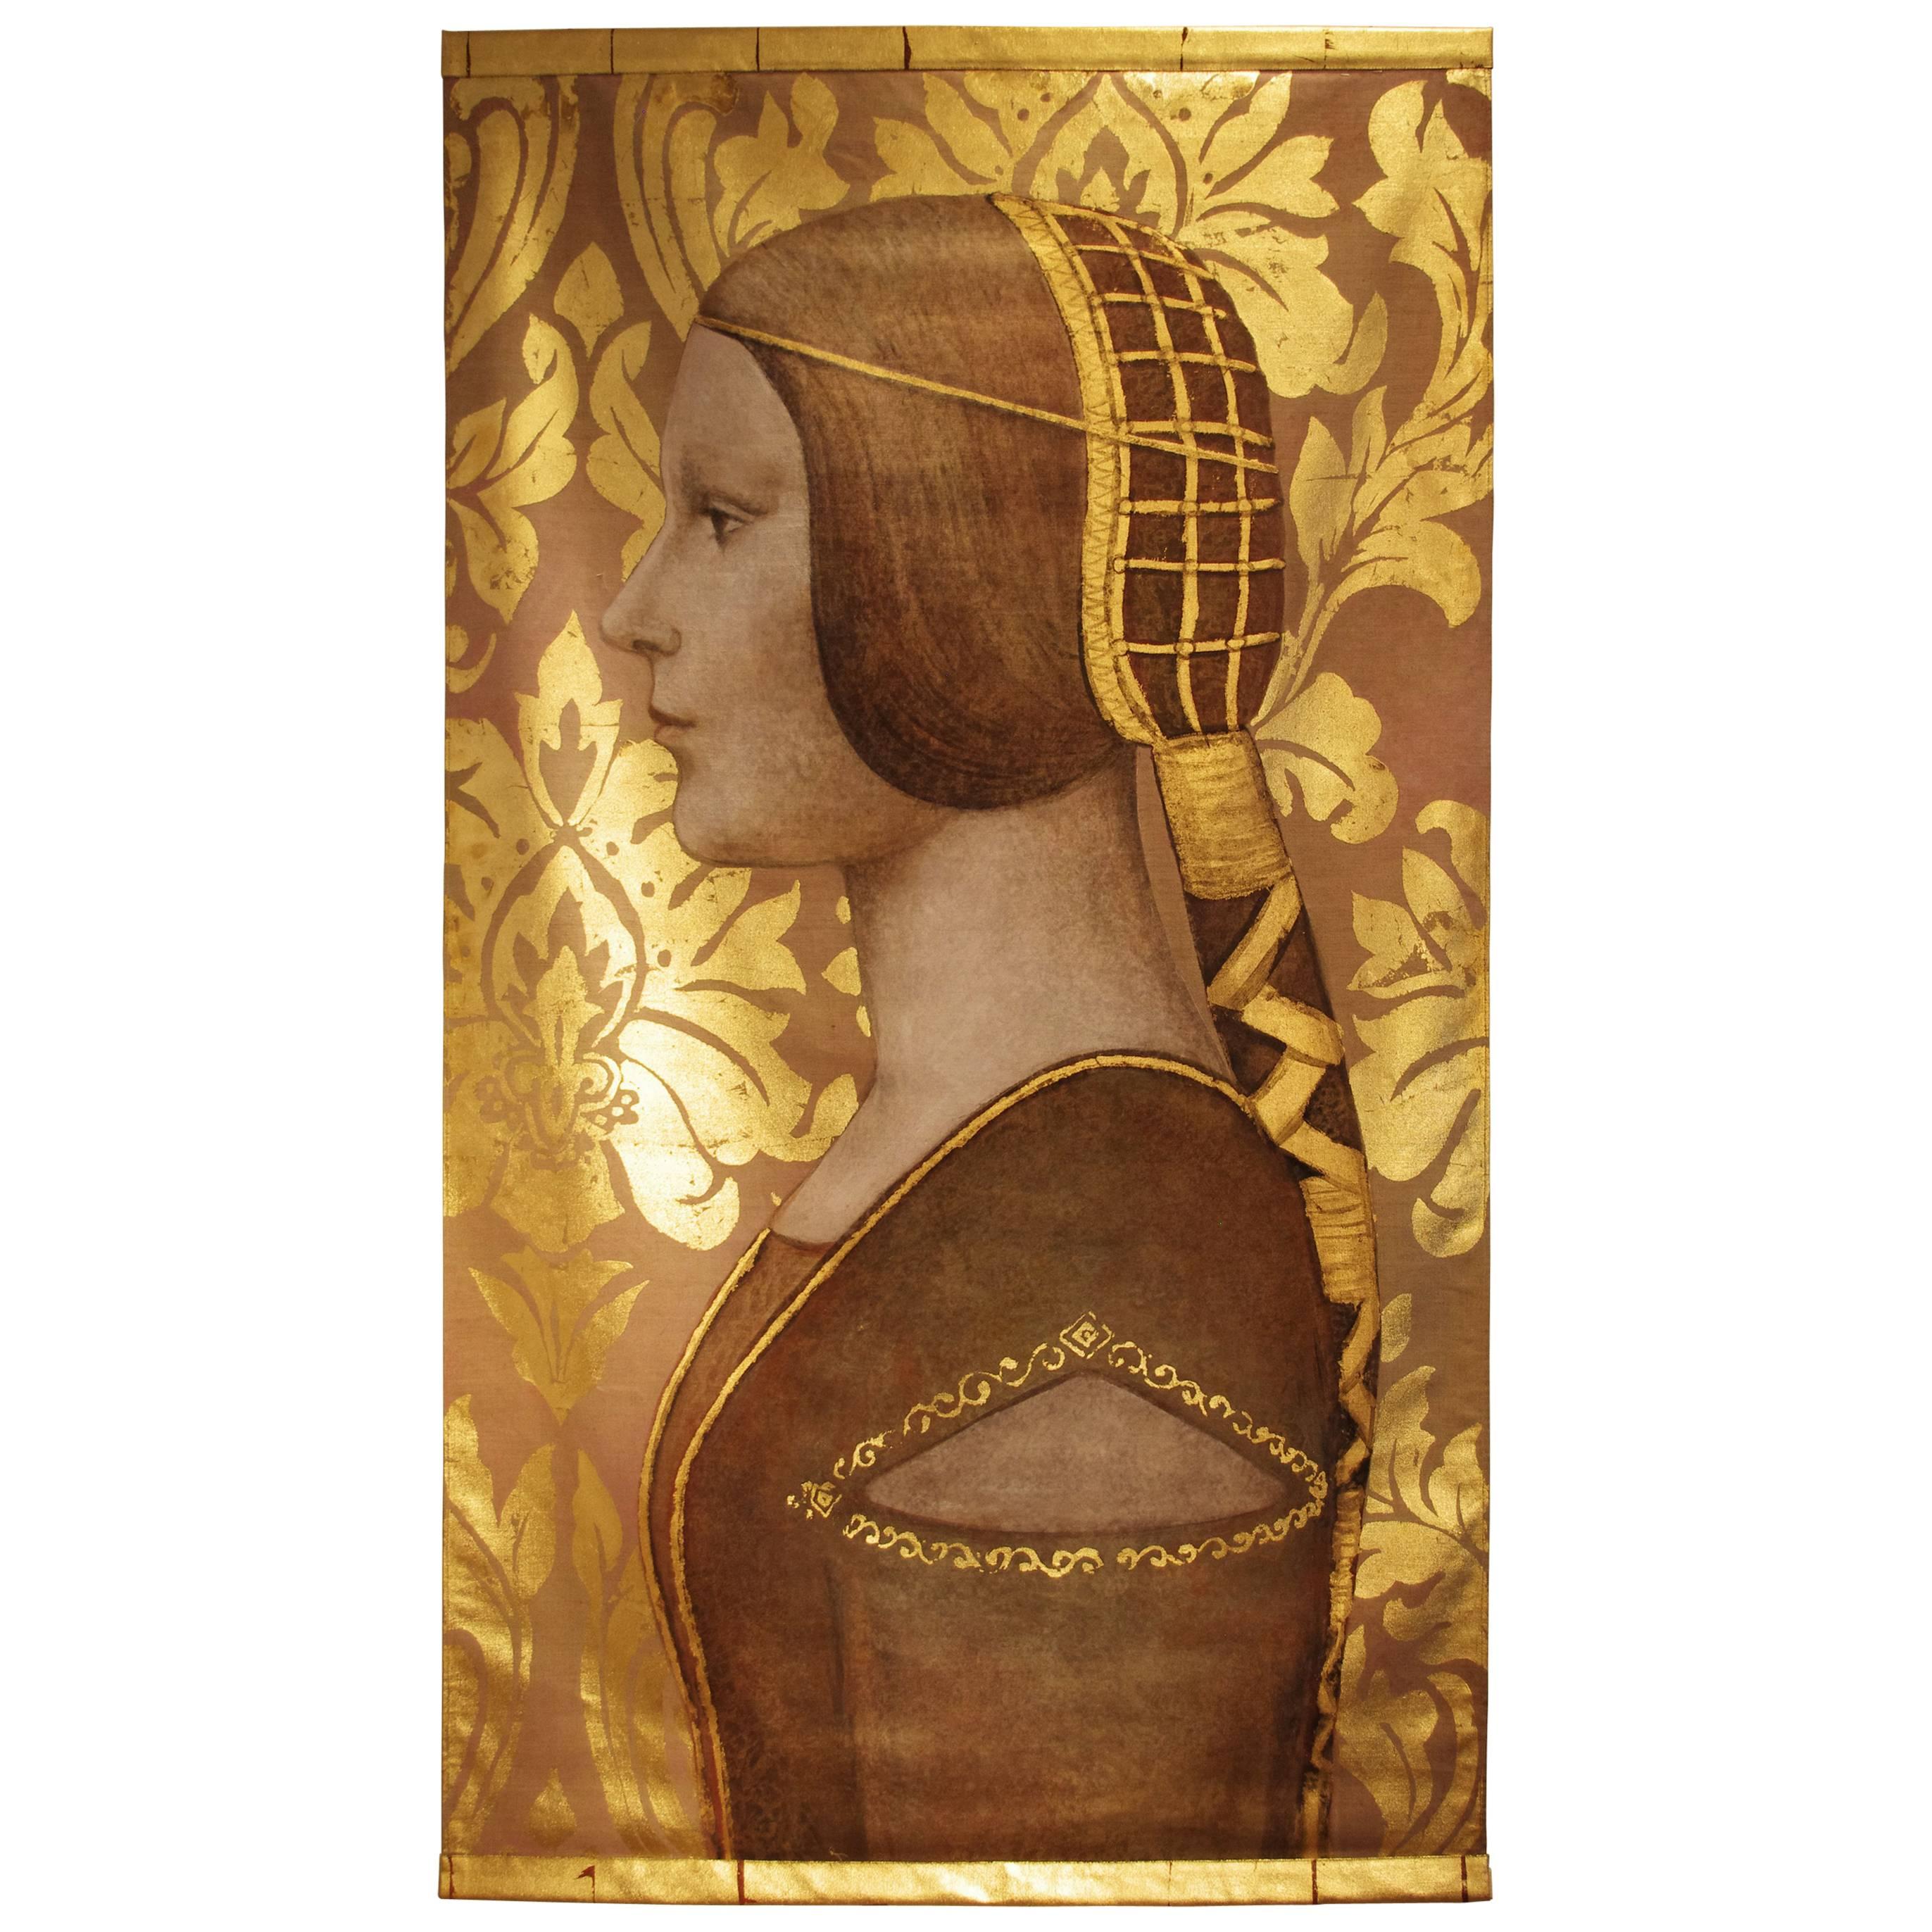 Woman Profile Portrait, Painted on Linen, Renaissance Style